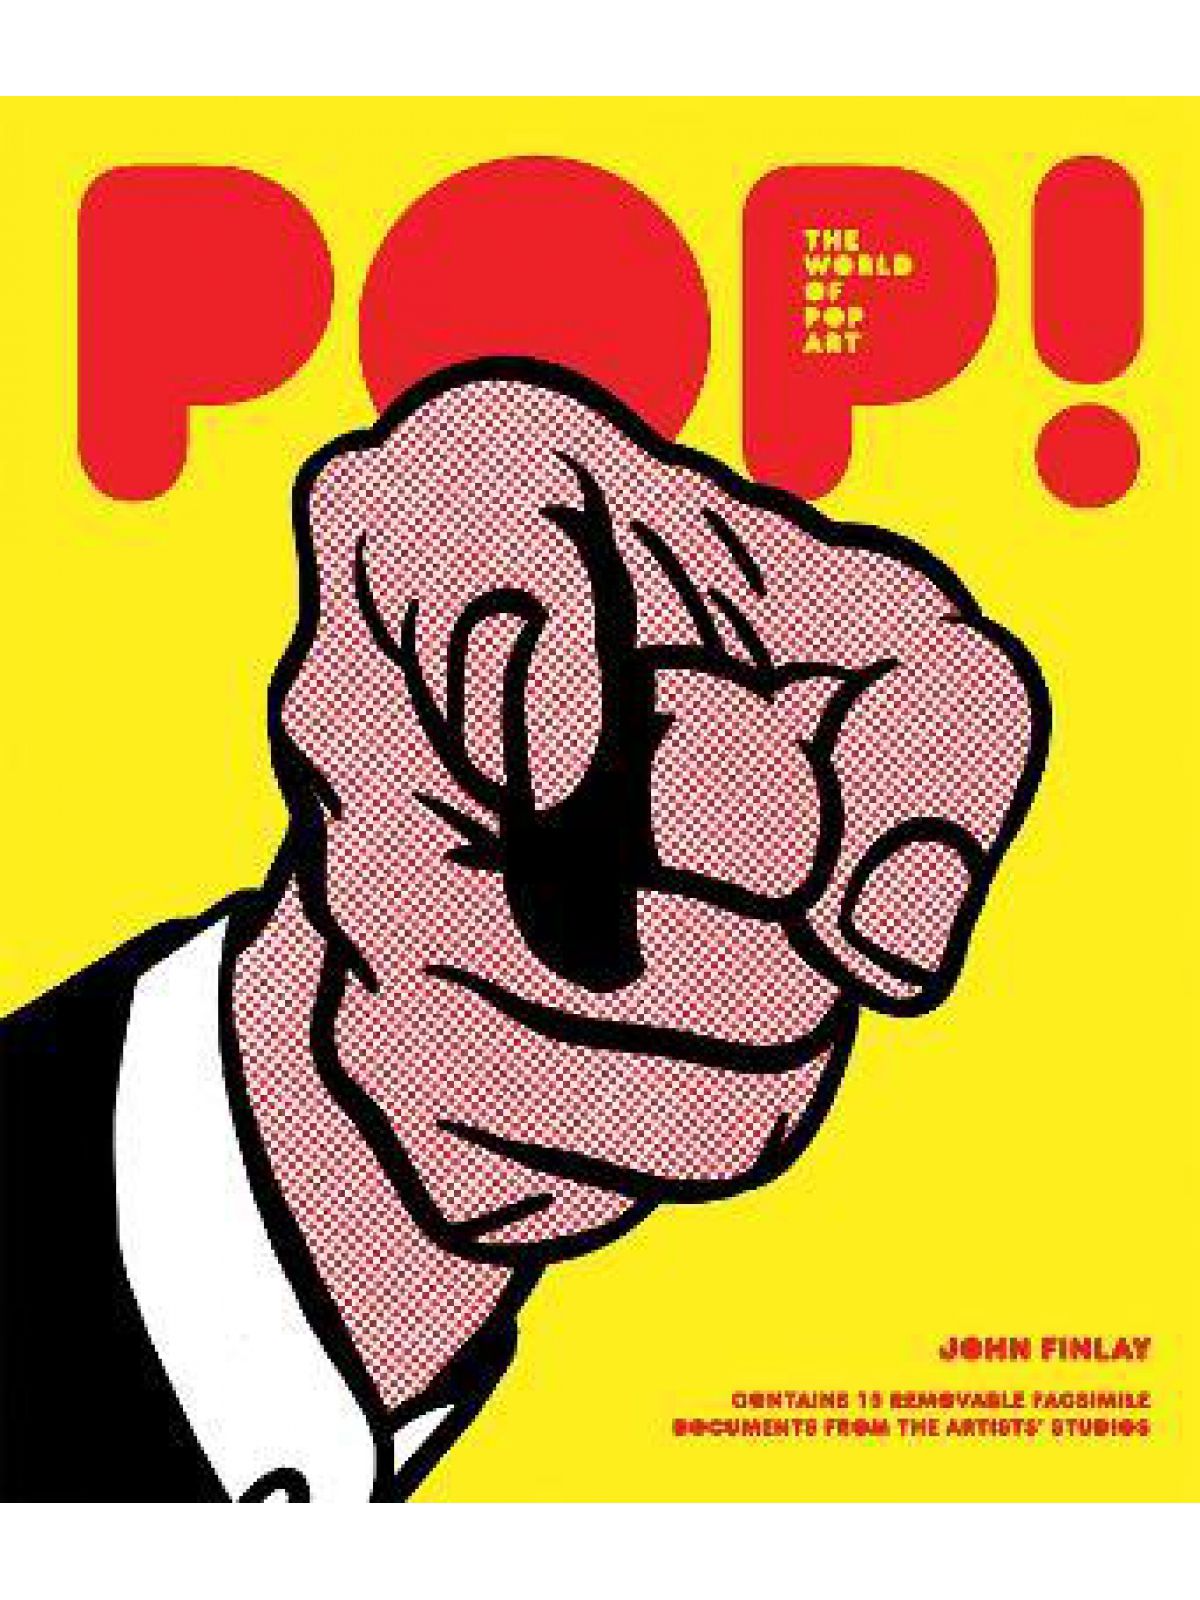 POP! THE WORLD OF POP ART  Купить Книгу на Английском